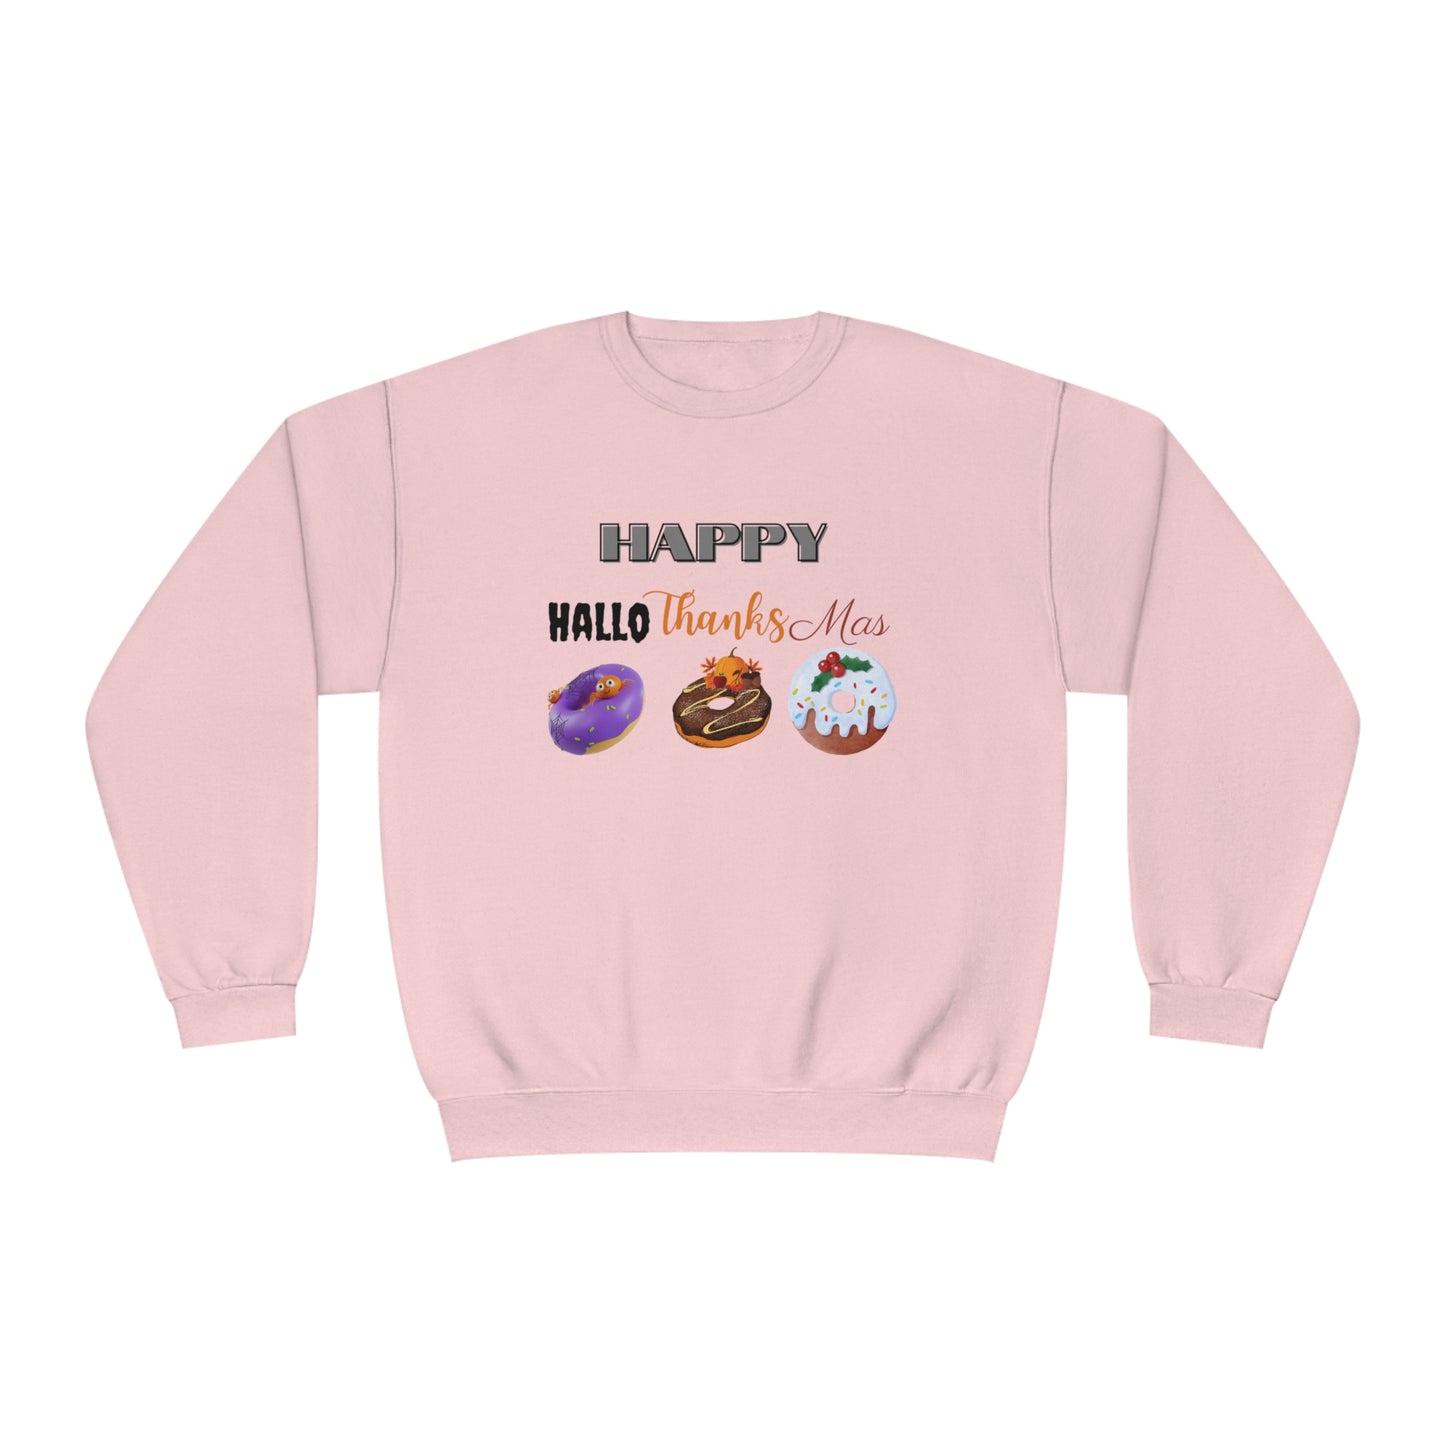 Happy HalloThanksMas Sweatshirt